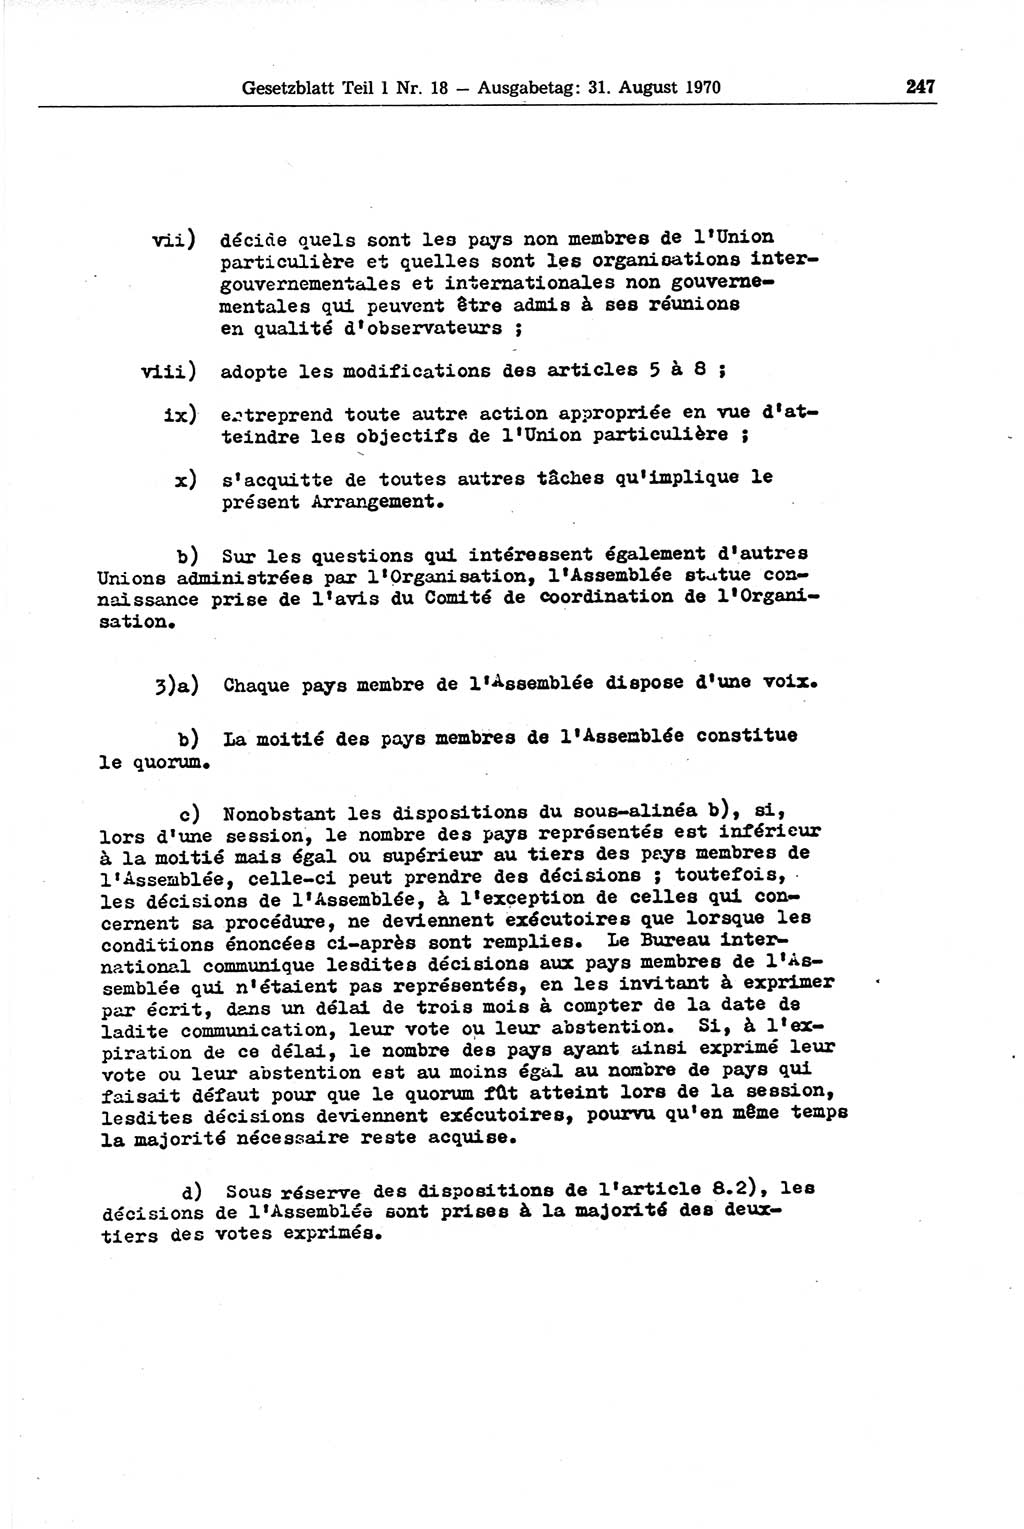 Gesetzblatt (GBl.) der Deutschen Demokratischen Republik (DDR) Teil Ⅰ 1970, Seite 247 (GBl. DDR Ⅰ 1970, S. 247)